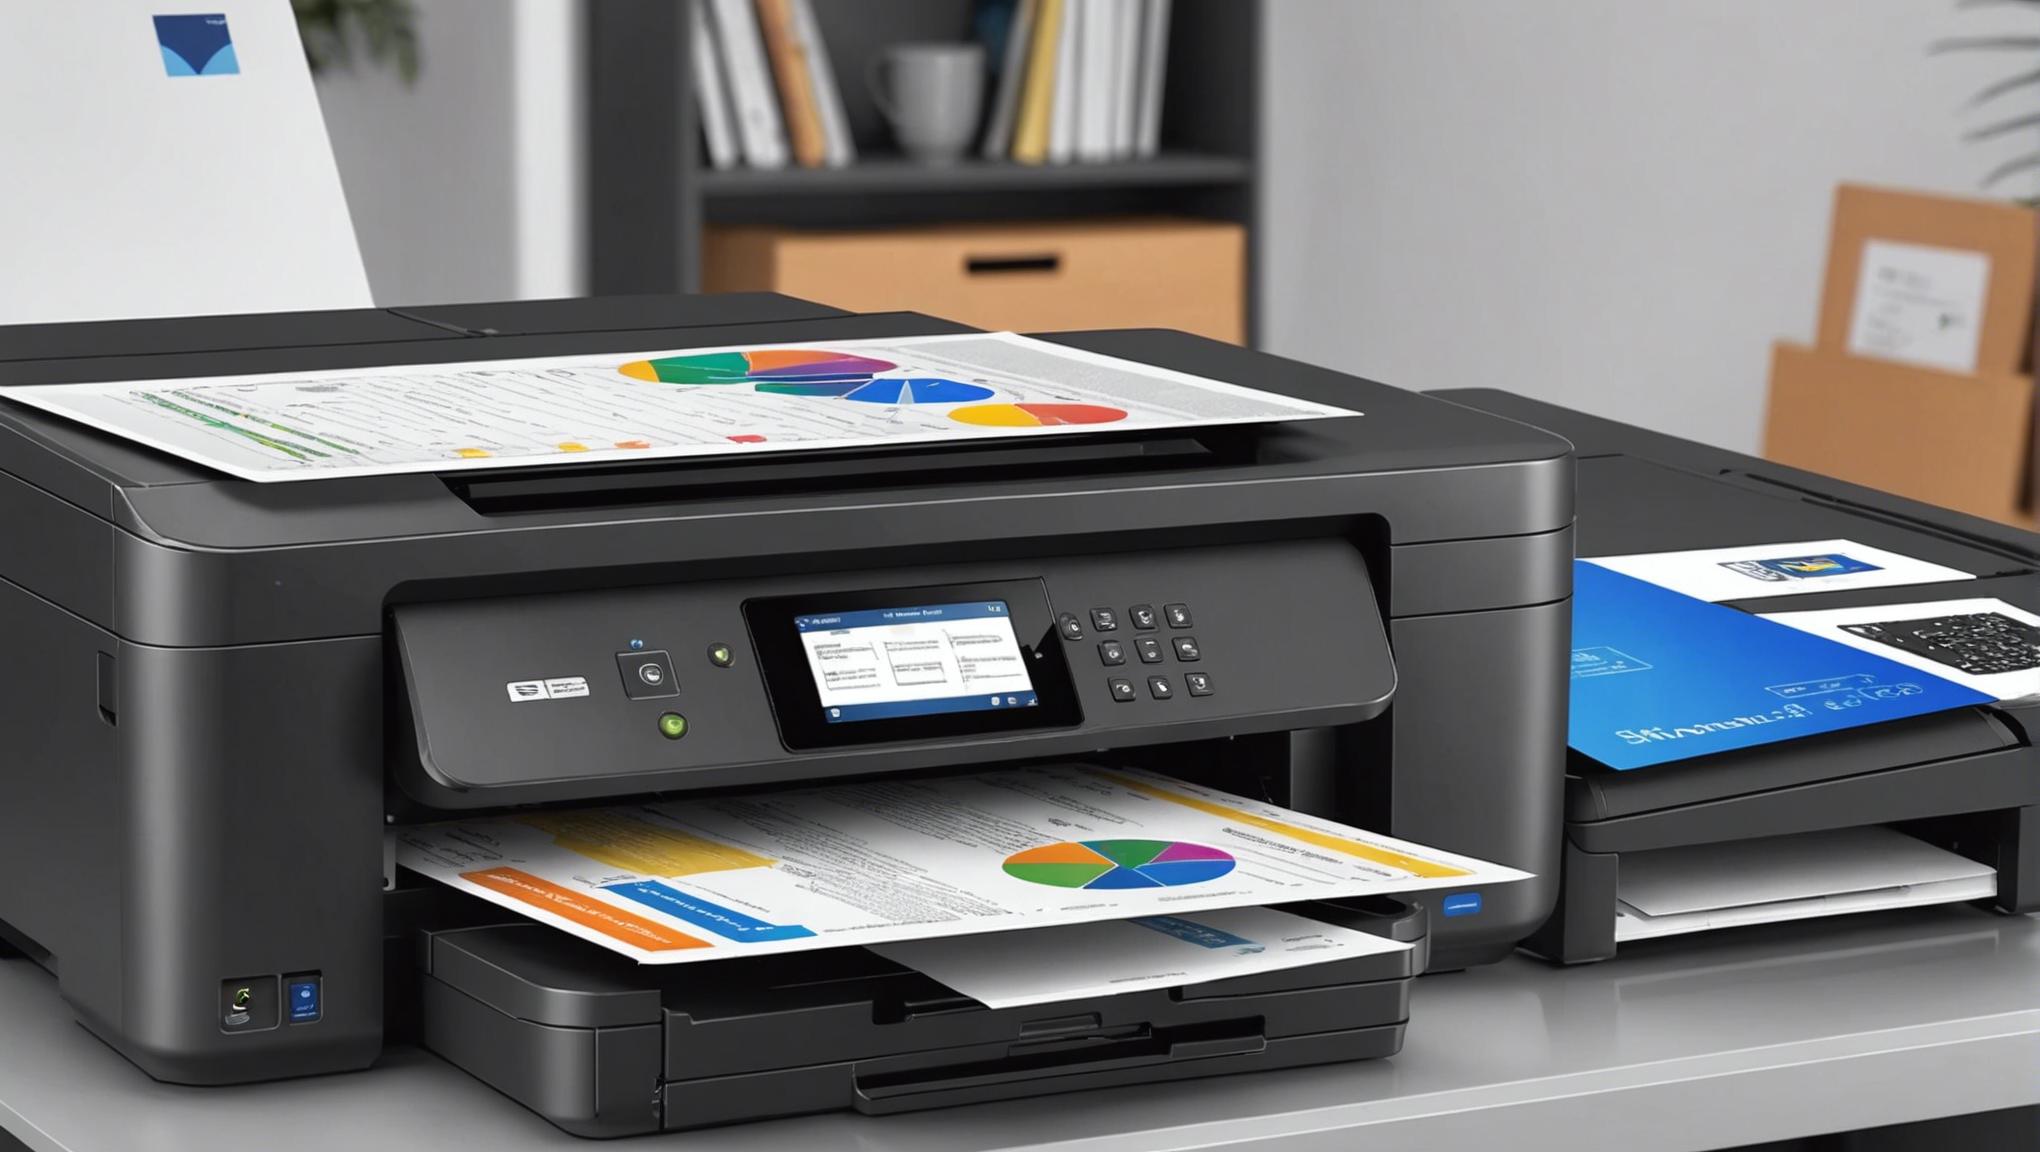 découvrez notre comparaison des gammes d'imprimantes professionnelles abordables pour trouver l'équipement parfait pour vos besoins, au meilleur prix.